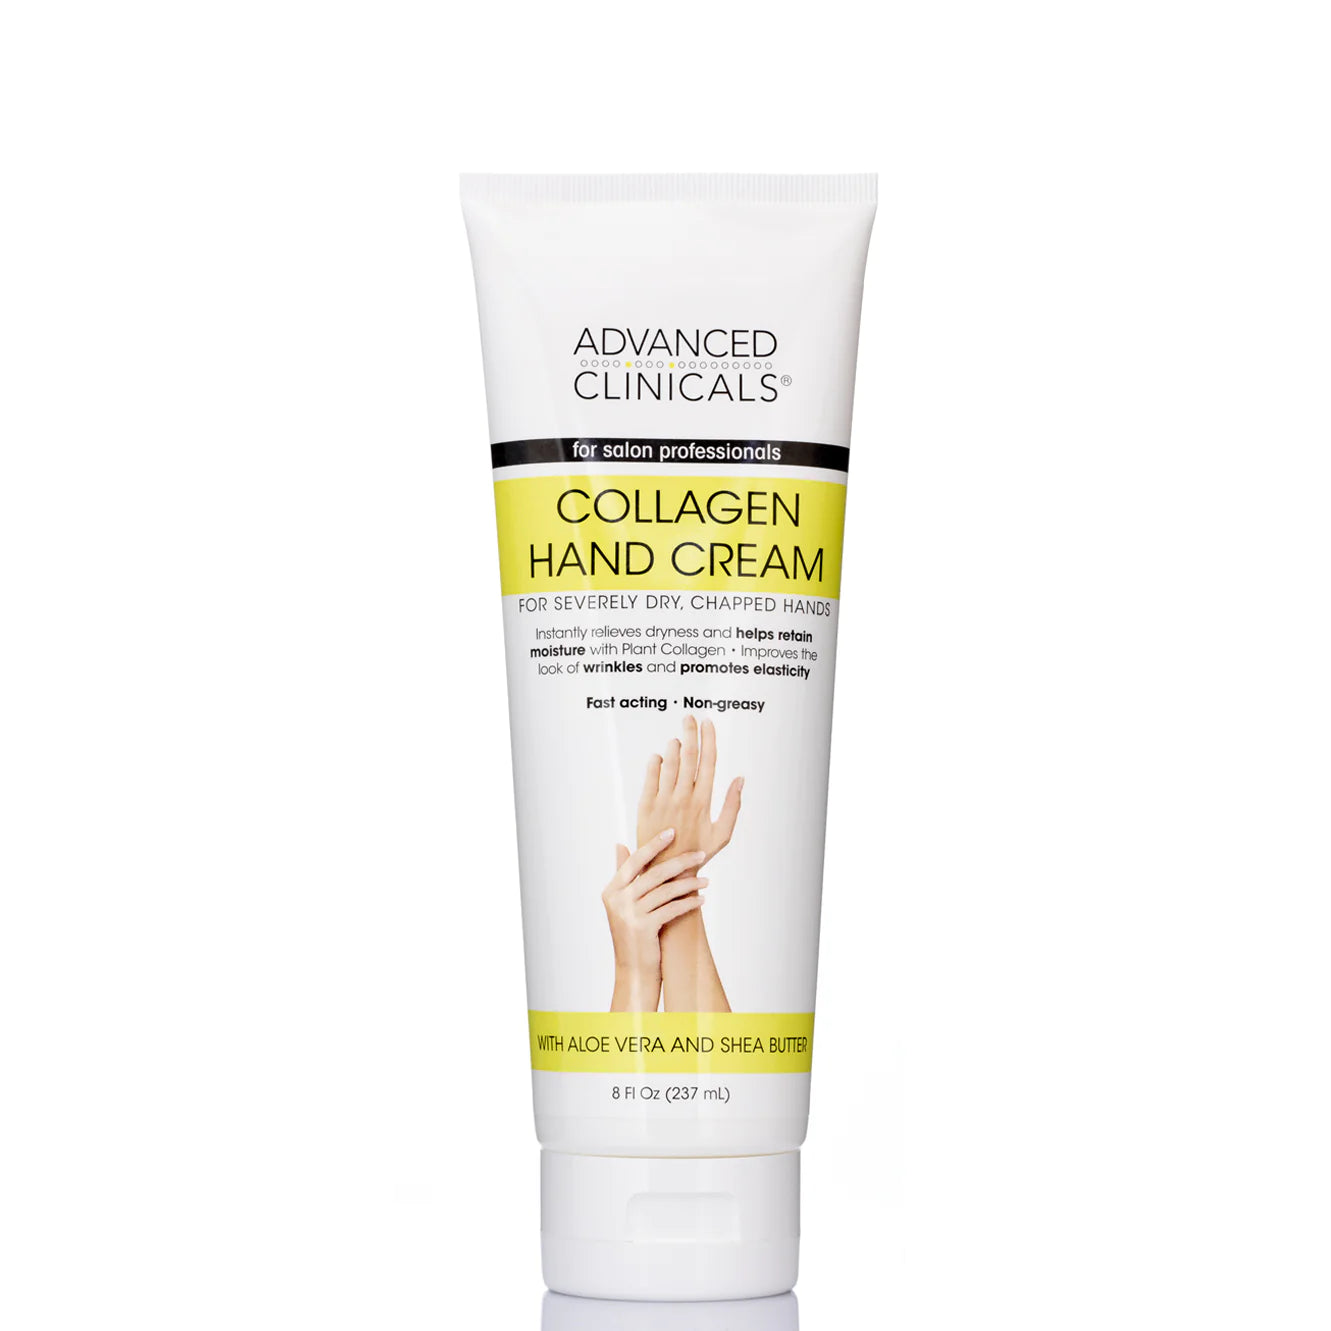 ADVANCED CLINICALS - Collagen Hand Cream | 237 mL